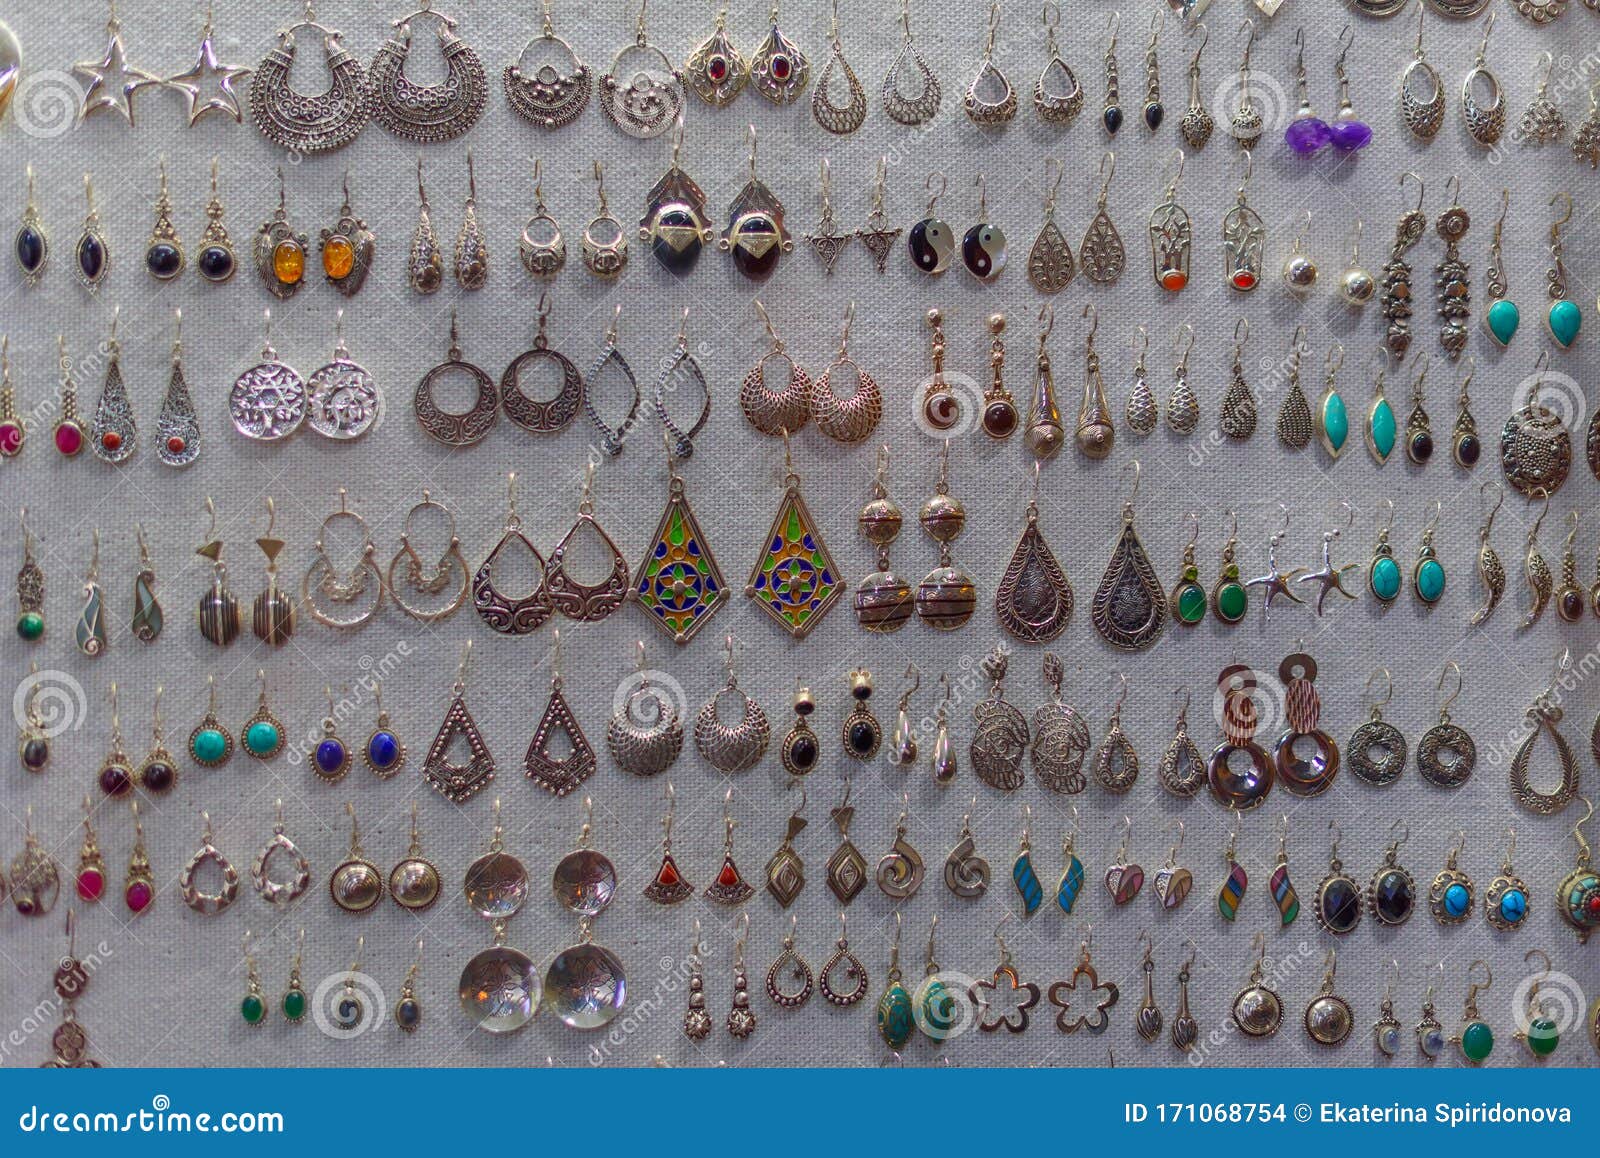 1940s Handmade Platinum Diamond Earrings 2.60 Carat For Sale at 1stDibs |  1940s earrings, 1940's earrings, 1940s earings